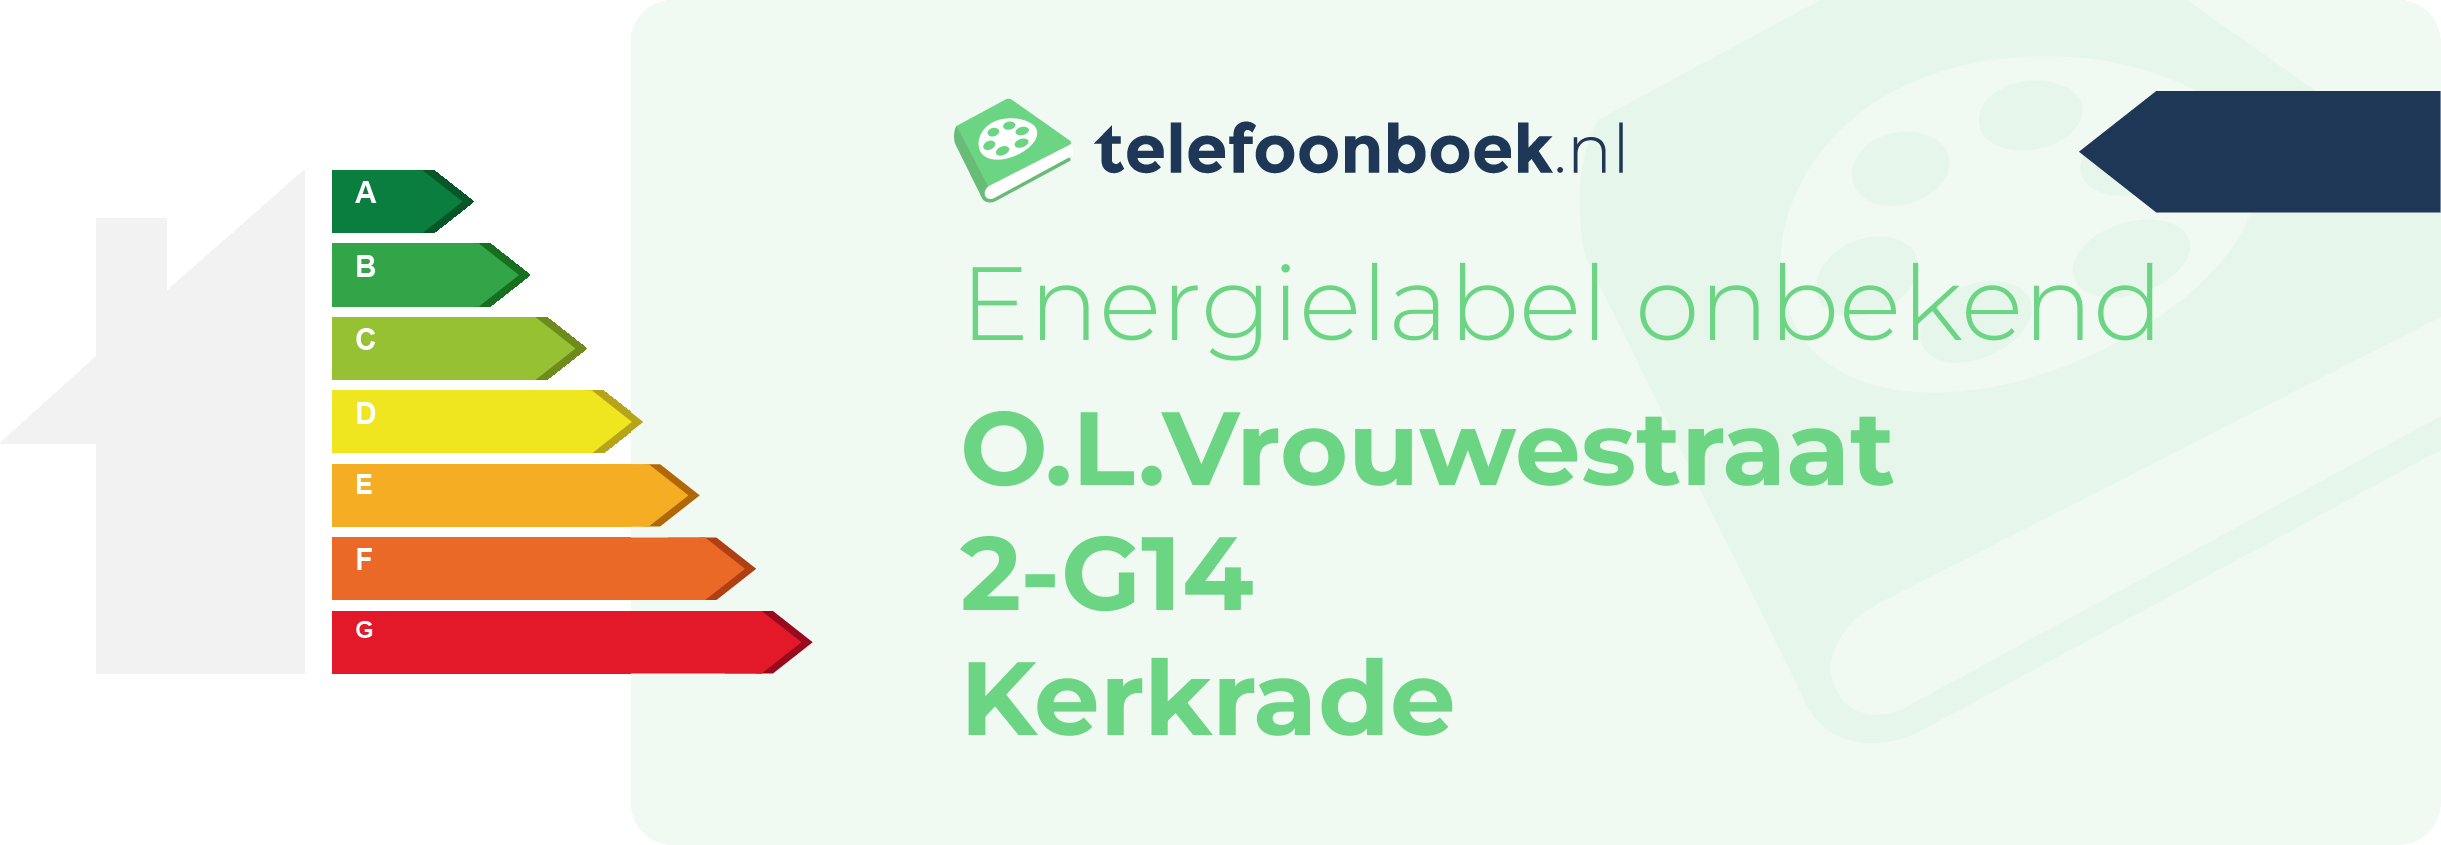 Energielabel O.L.Vrouwestraat 2-G14 Kerkrade